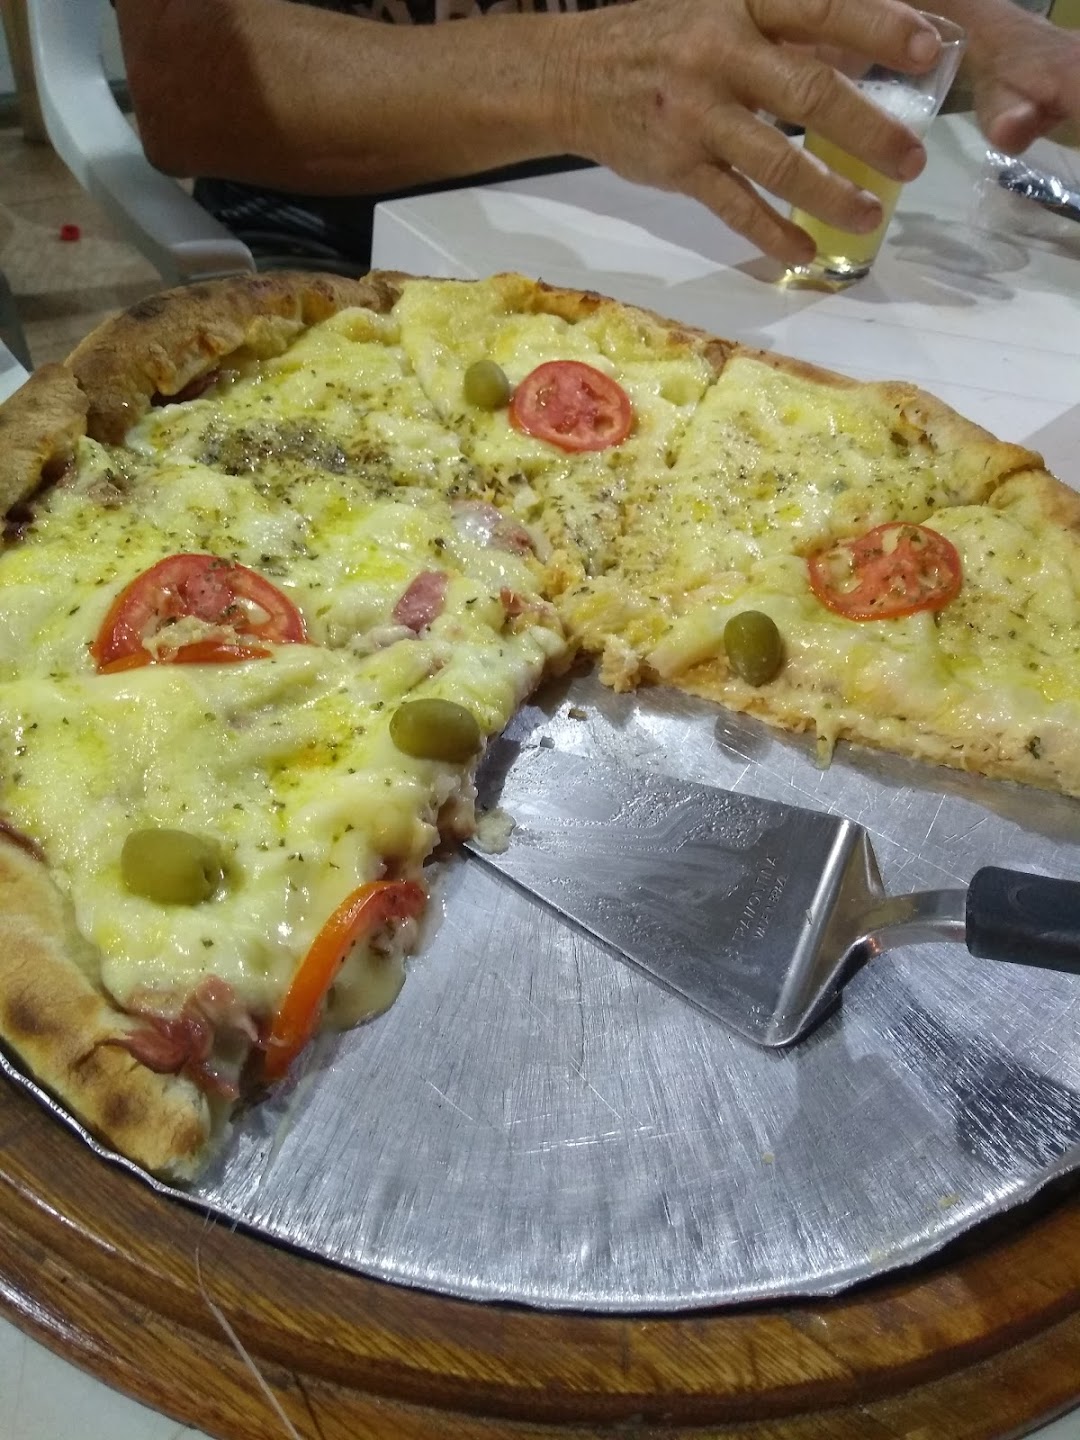 Pizzaria Paulista